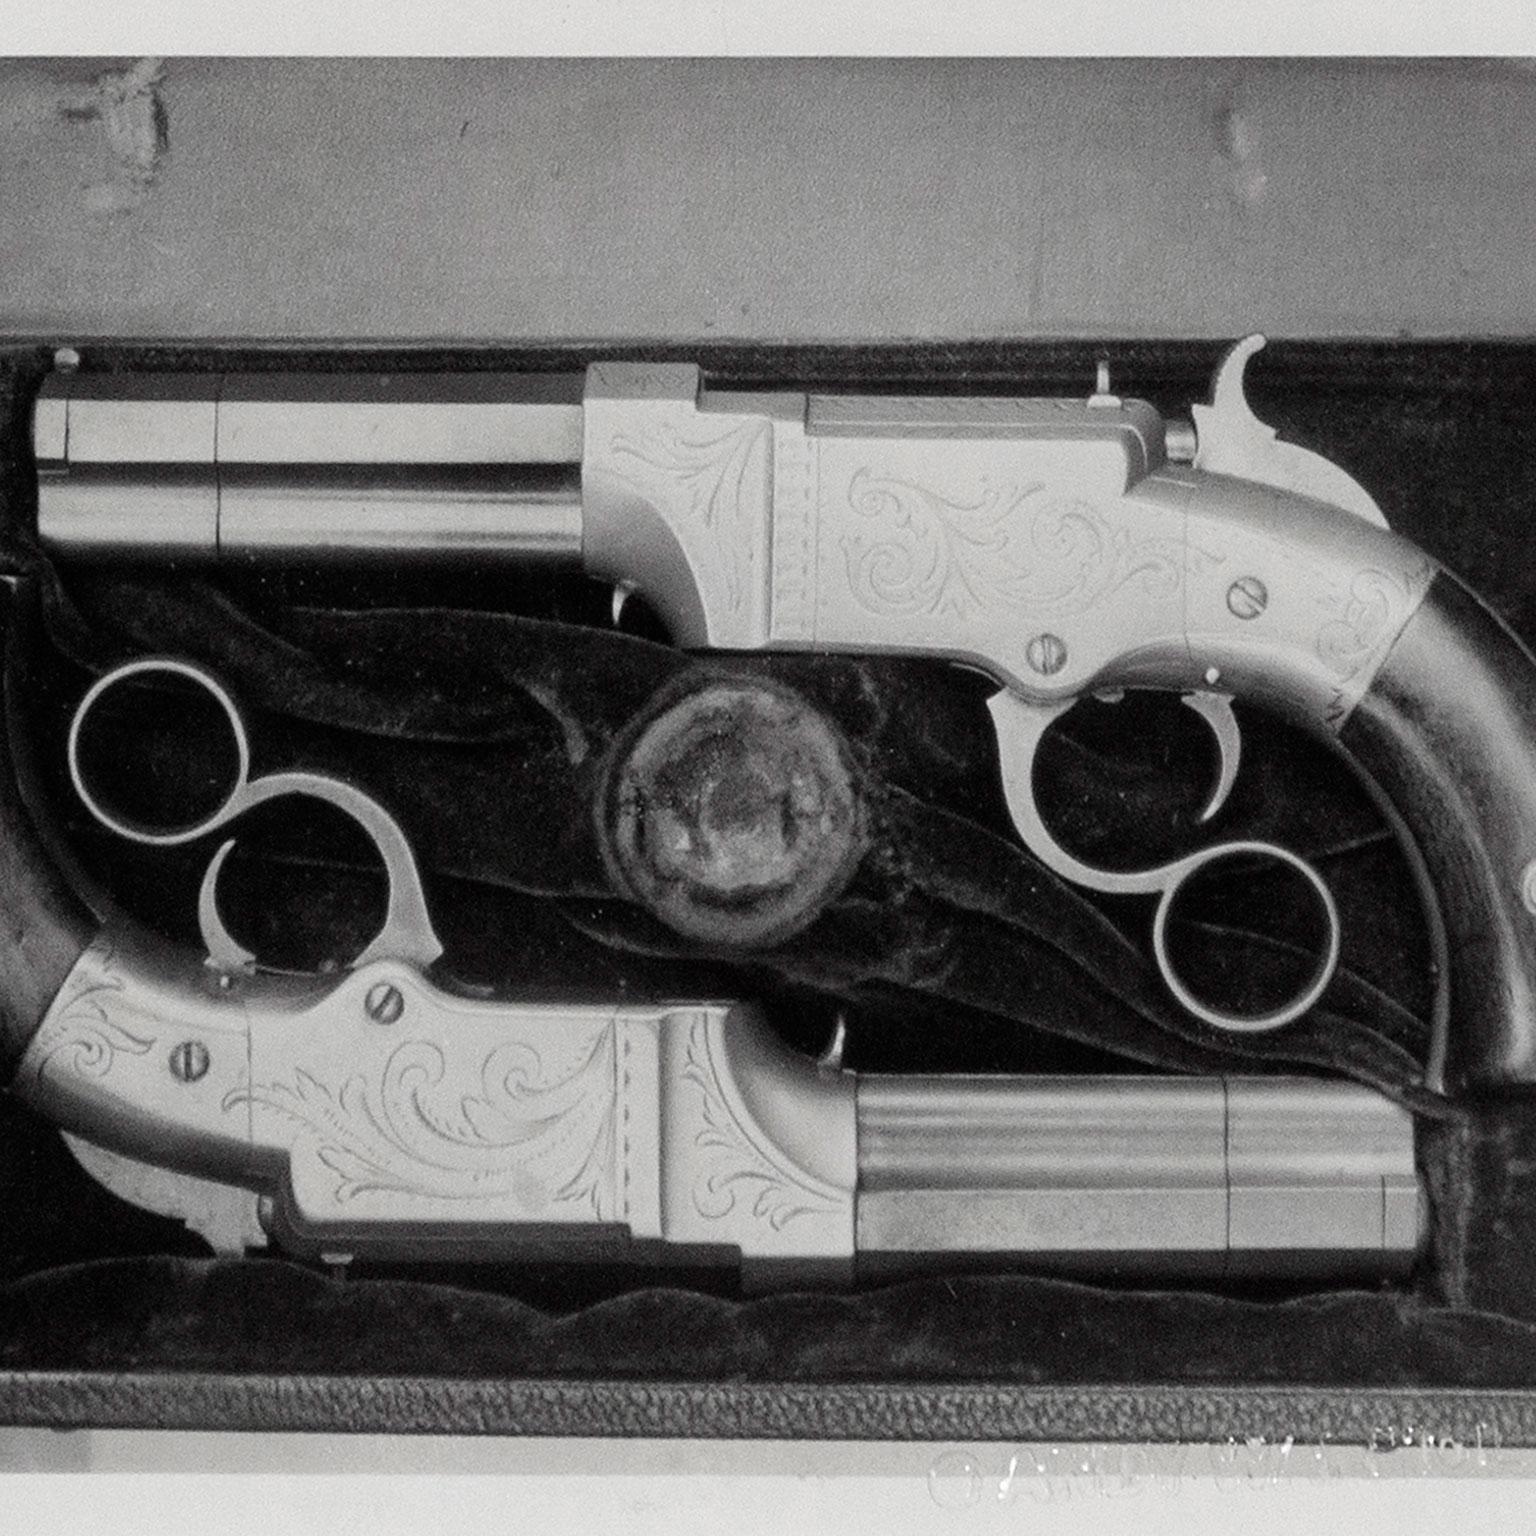 Andy Warhol begann 1971 mit der Polaroid-Großbildkamera, die er bis zu seinem Tod im Jahr 1987 regelmäßig benutzte. Obwohl die Kamera 1973 ausgemustert wurde, nutzte er sie weiterhin, um die Schauspieler, Künstler, Tänzer, Politiker, Prominenten und